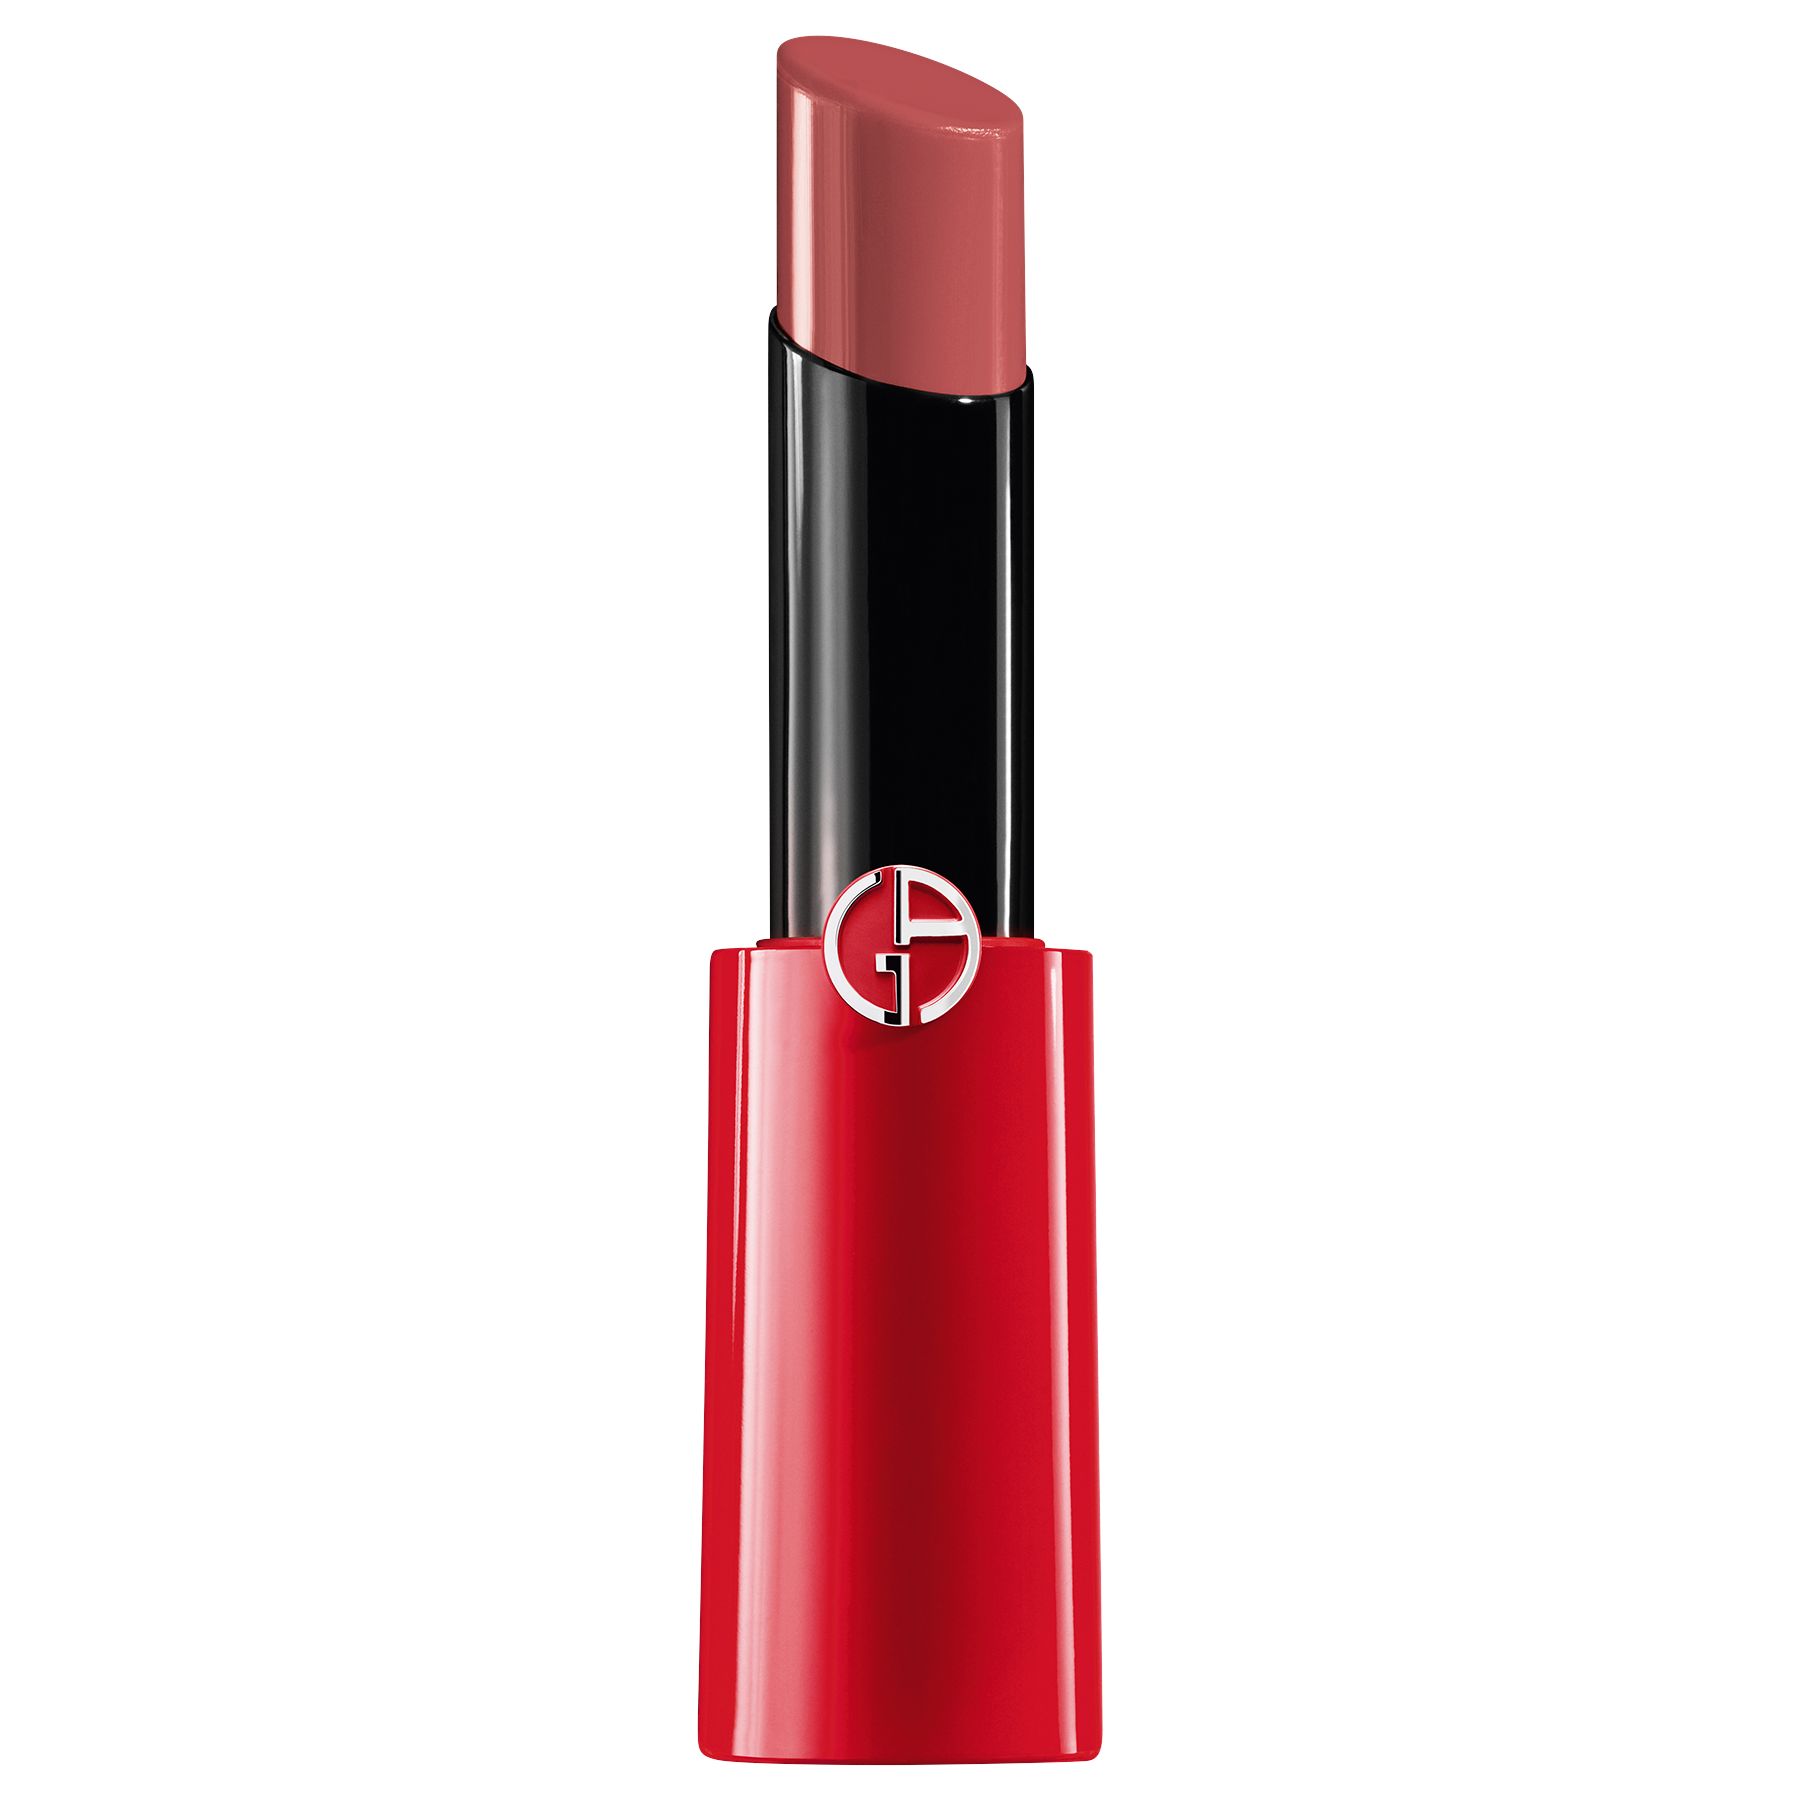 giorgio armani lipsticks